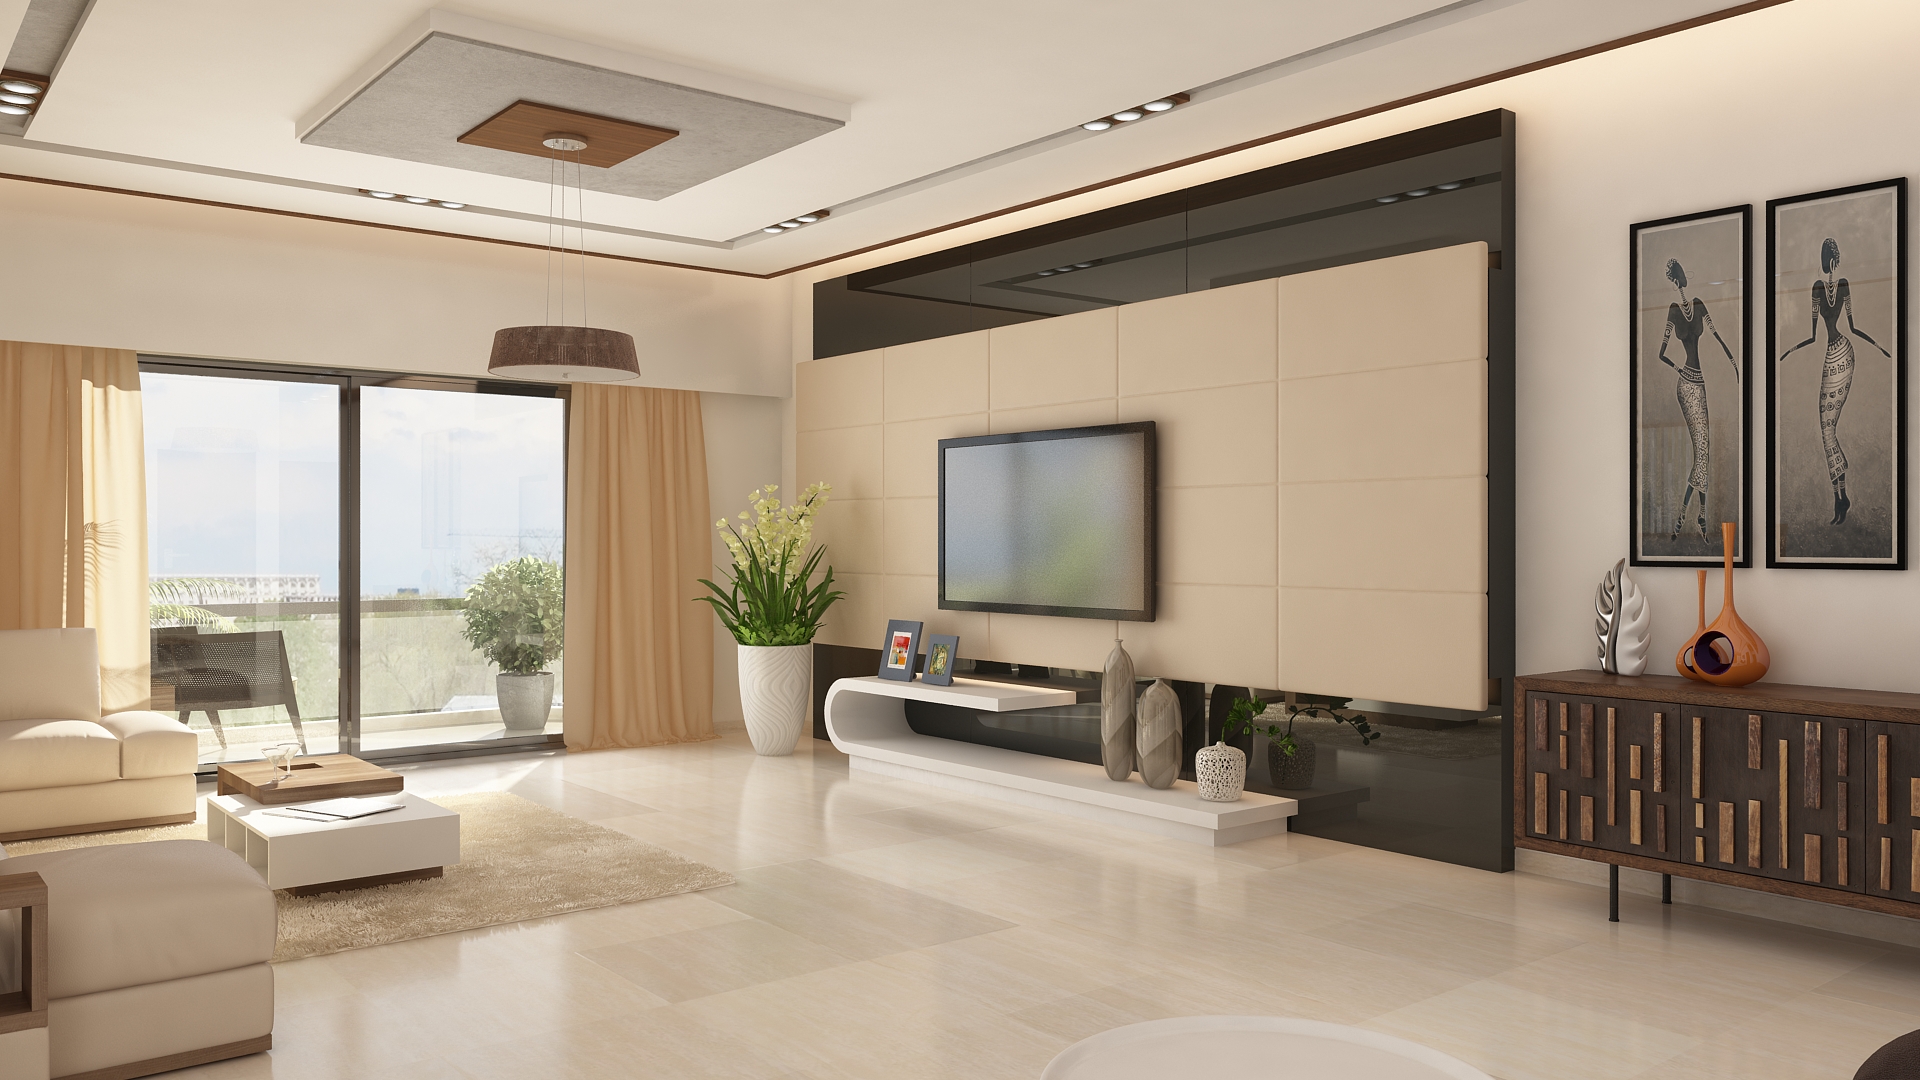 Ghar360 Portfolio 2 Bhk Apartment Interior Design In Jp